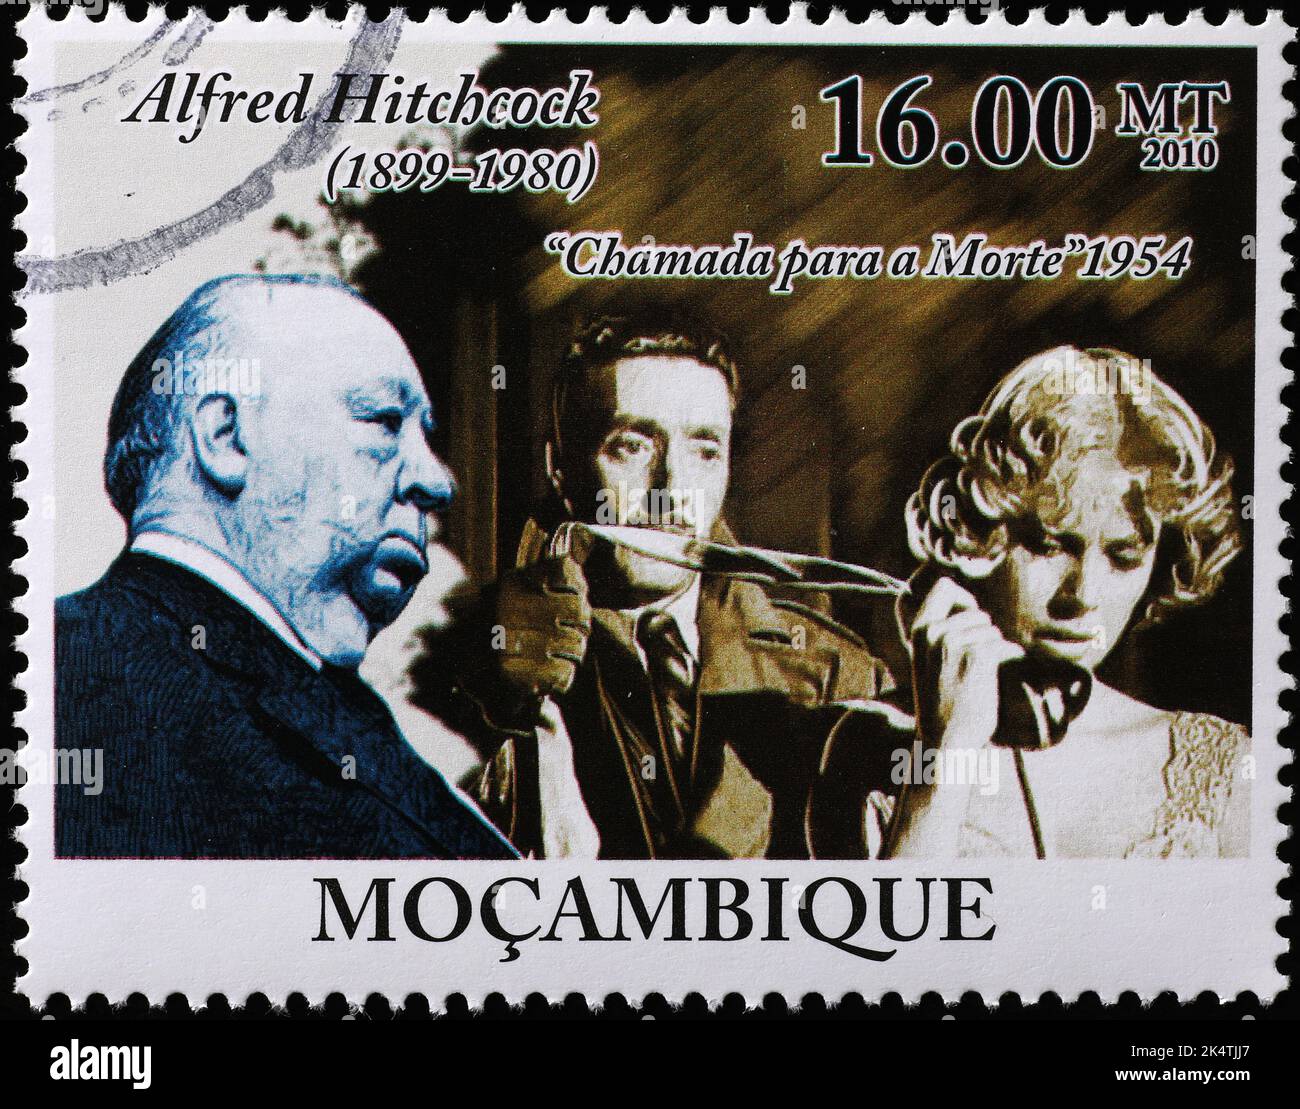 Alfred Hitchcock und sein Film 'Dial M for Murder' auf Briefmarke Stockfoto